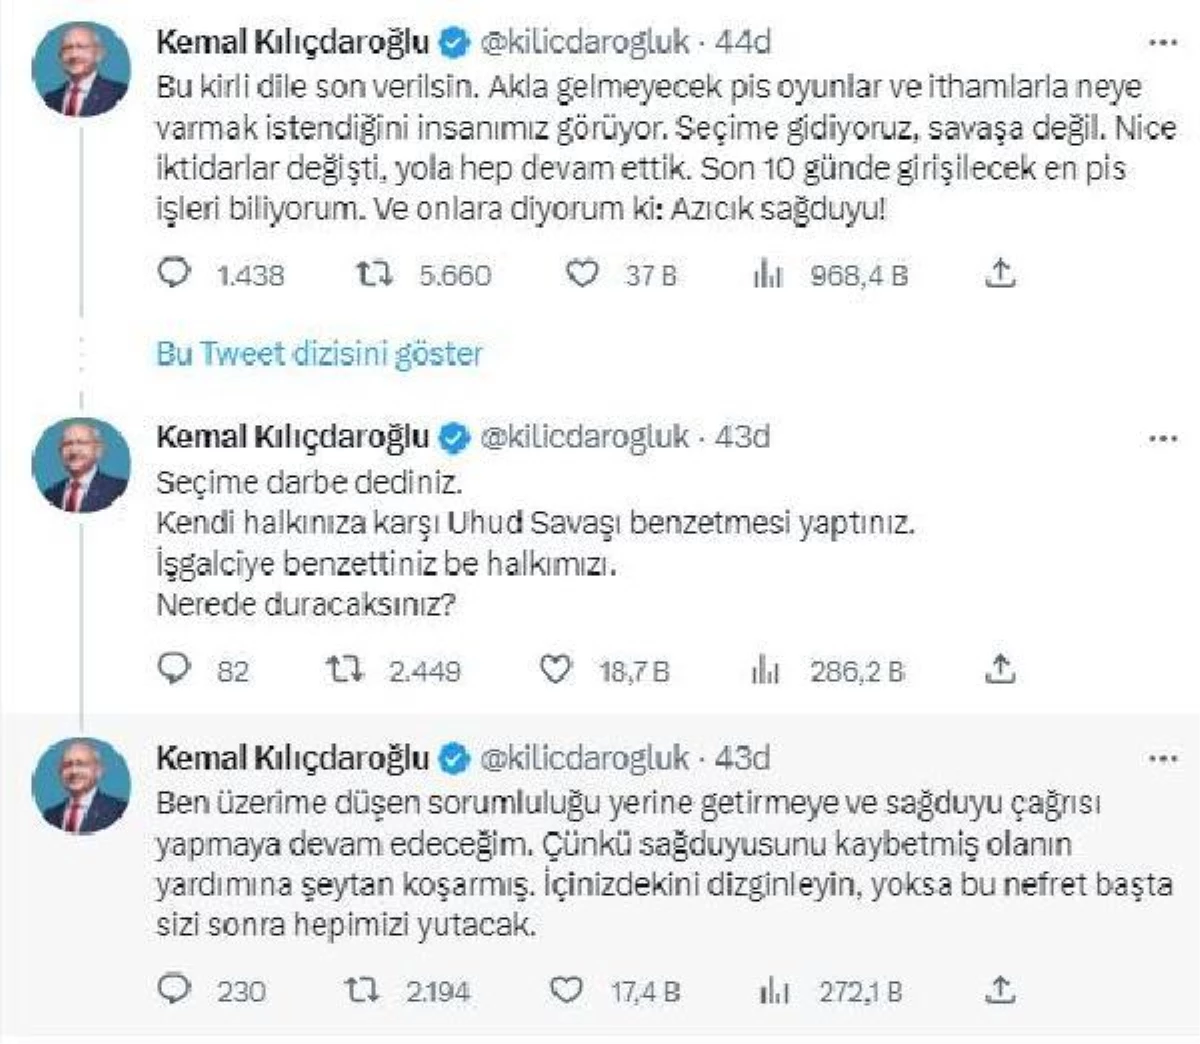 Kılıçdaroğlu: Seçime gidiyoruz, savaşa değil